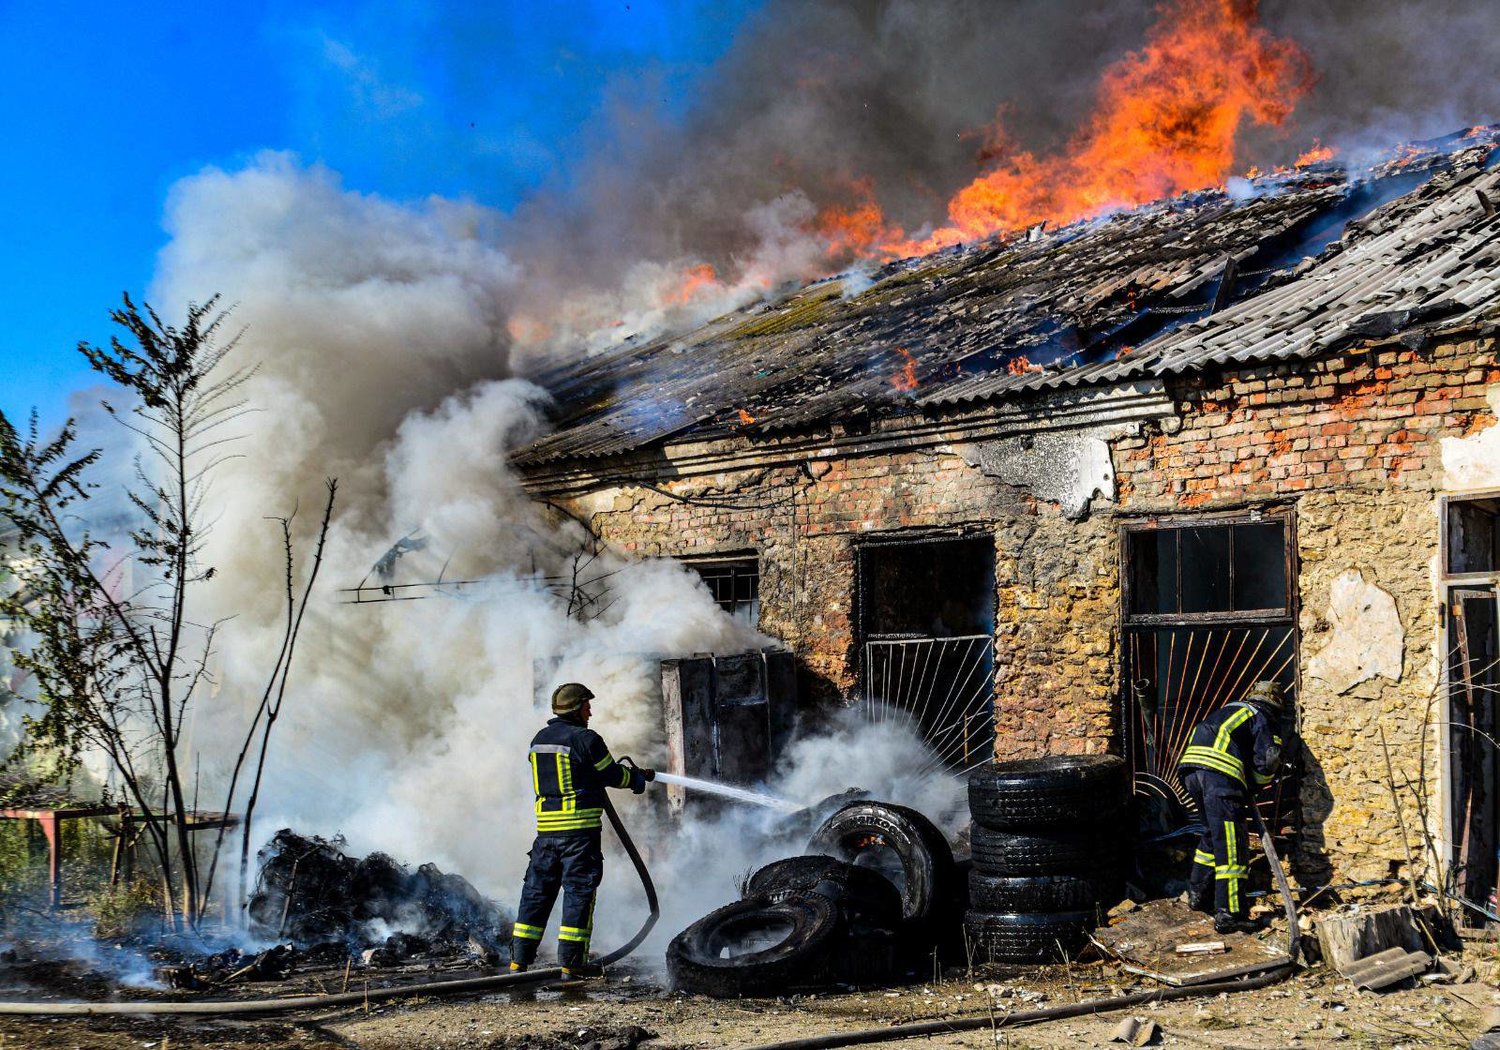 رجال الإطفاء وهم يقومون بإخماد حريق في أحد المستودعات بعد القصف في خيرسون منتصف الشهر الماضي (أ.ف.ب)